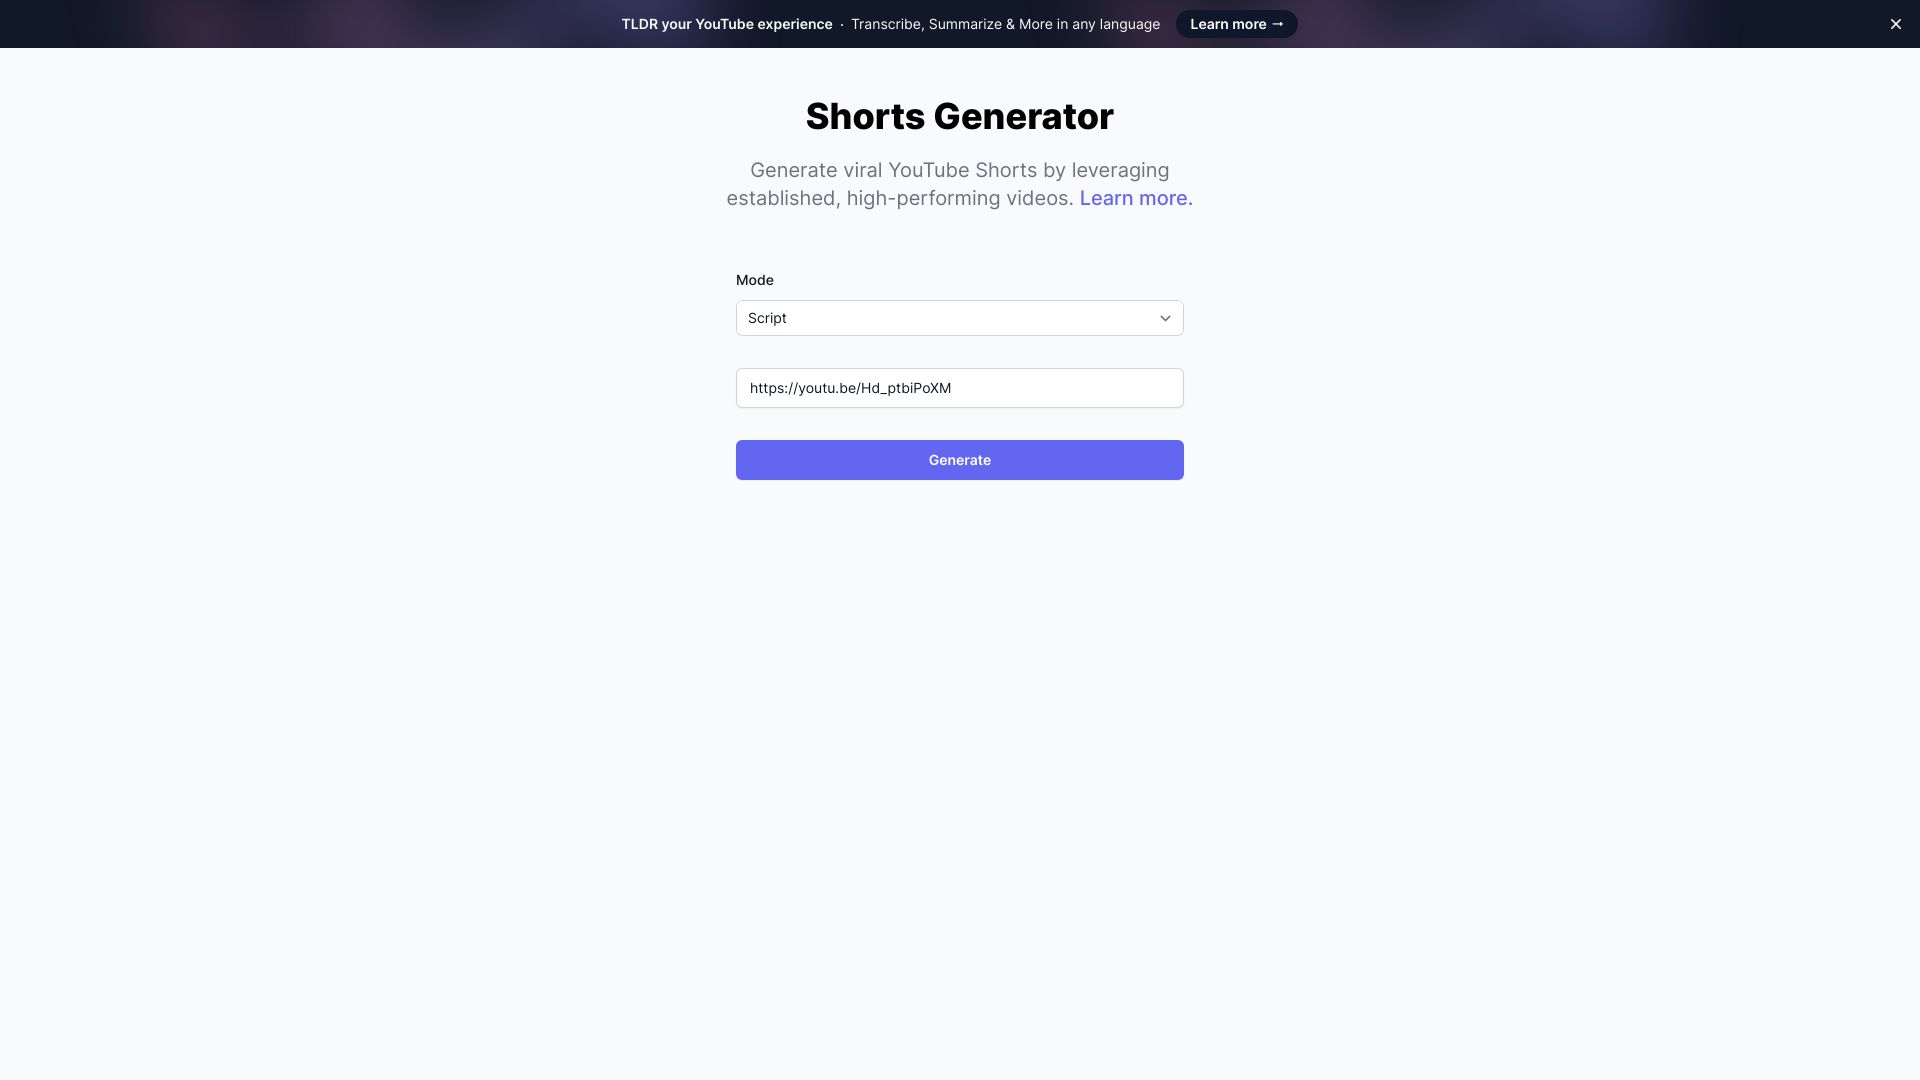 Shorts Generator